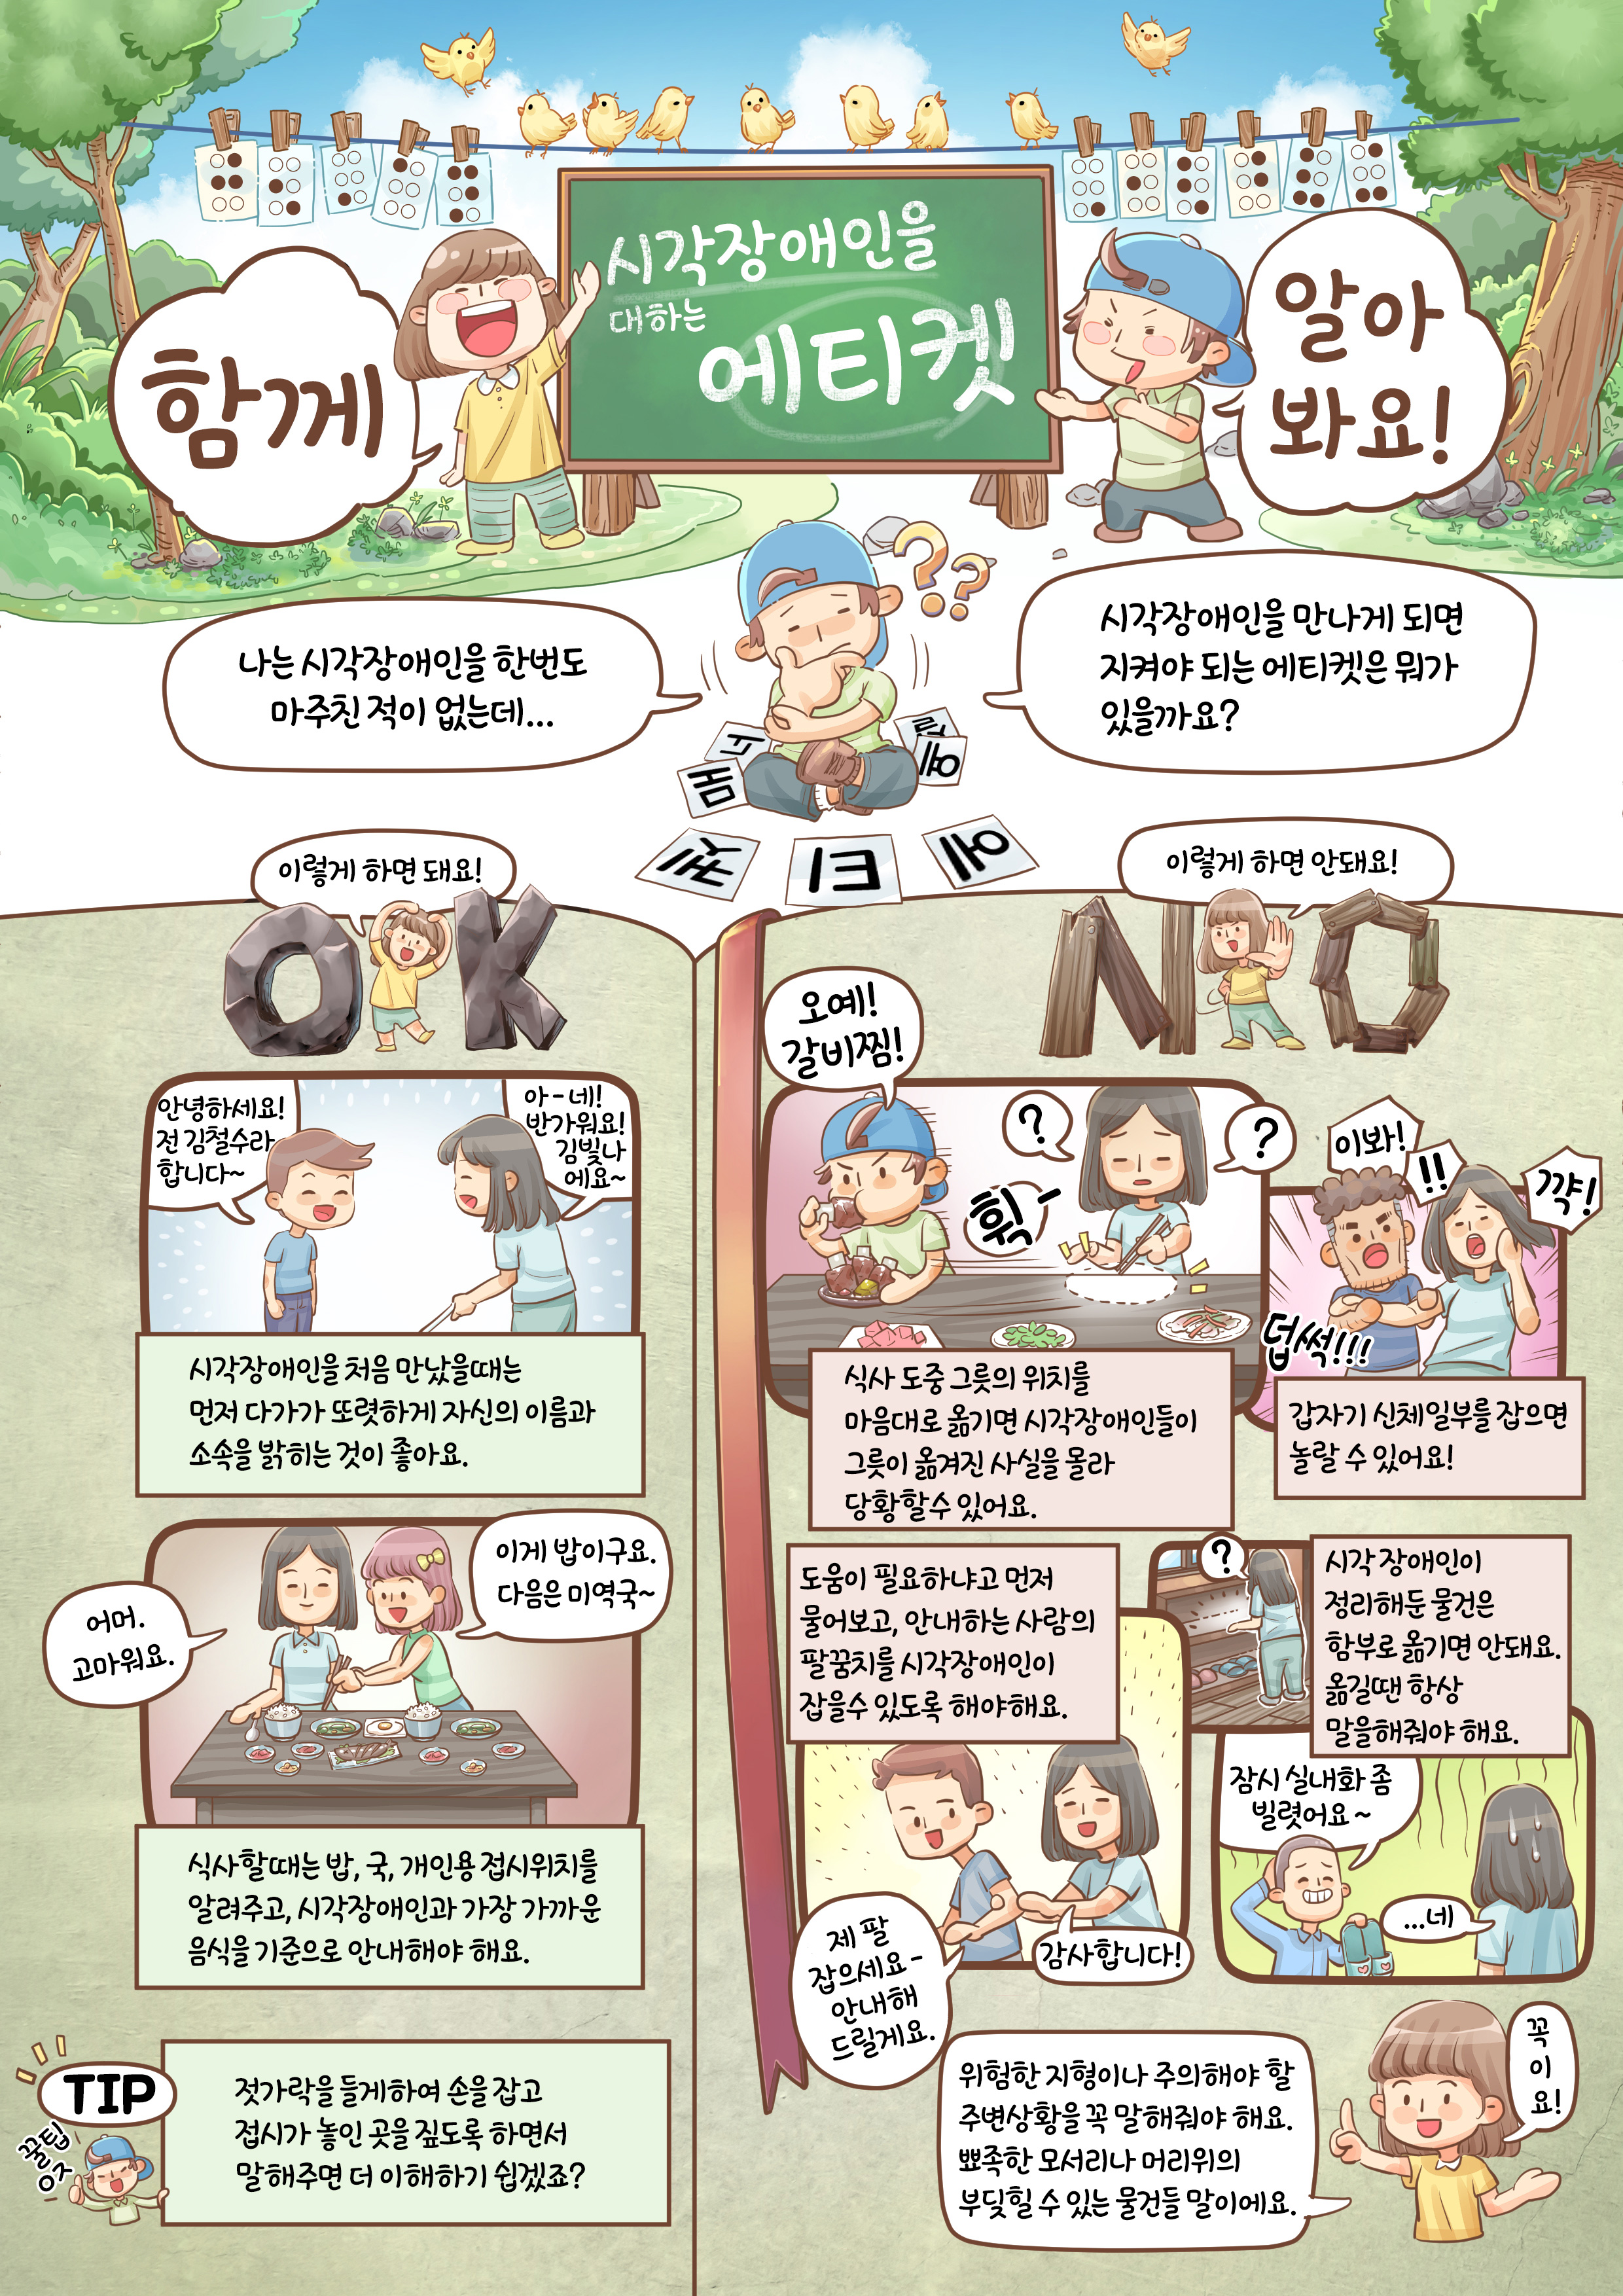 시각장애인의 이해 교육웹툰 2화. 원고는 하단을 참조하세요.